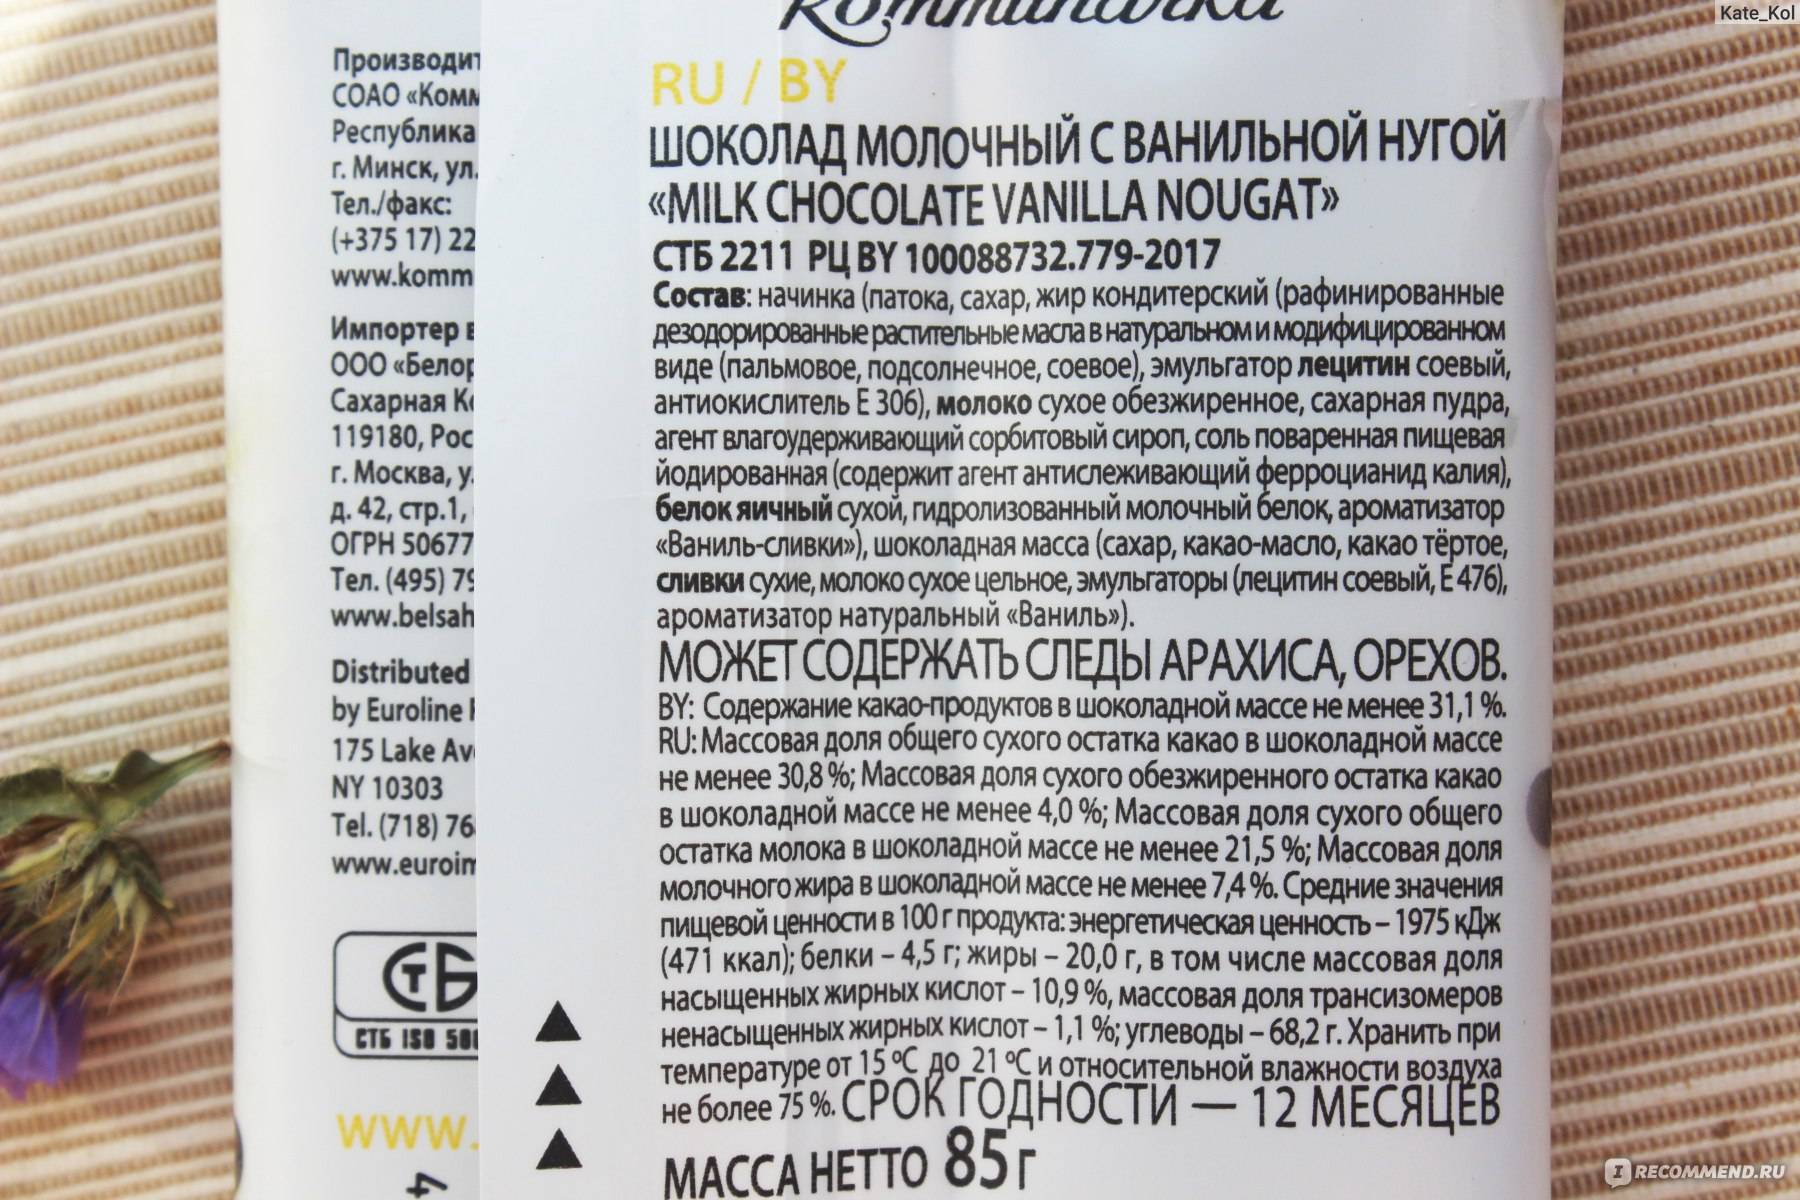 Новая группа заменителей масла какао лауринового типа на российском рынке